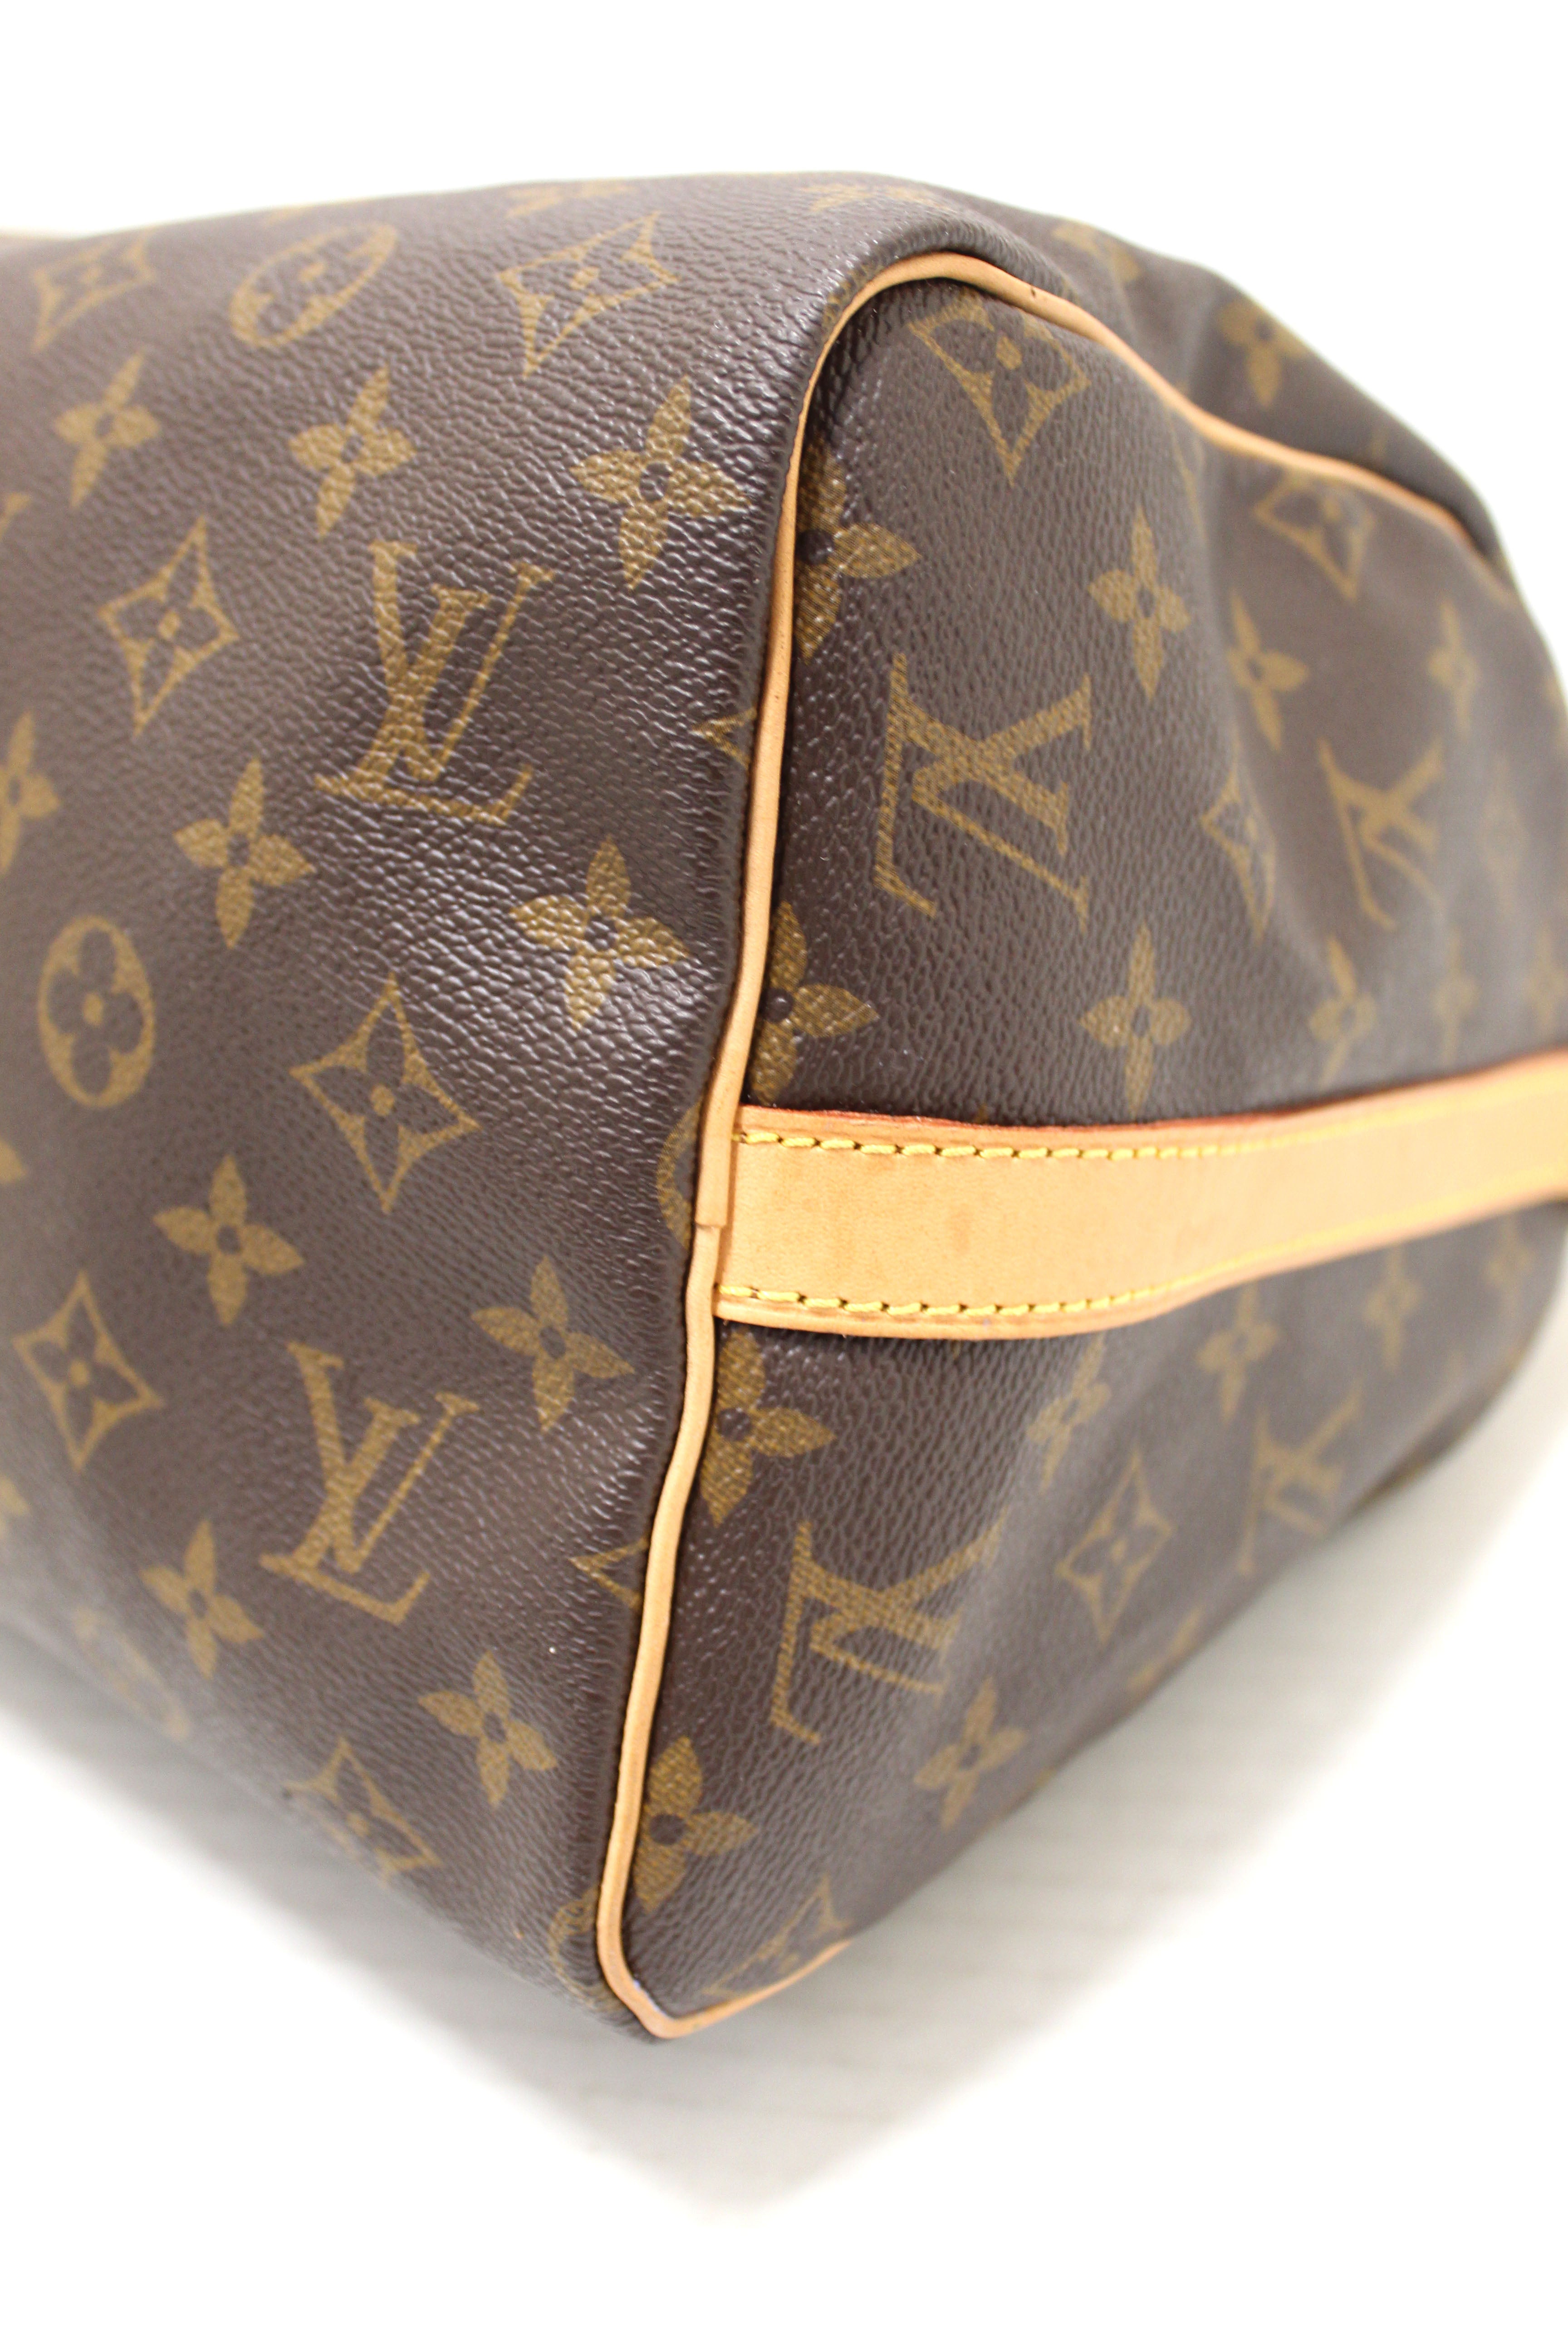 Authentic Louis Vuitton Classic Monogram Speedy 30 Bandouliere Bag